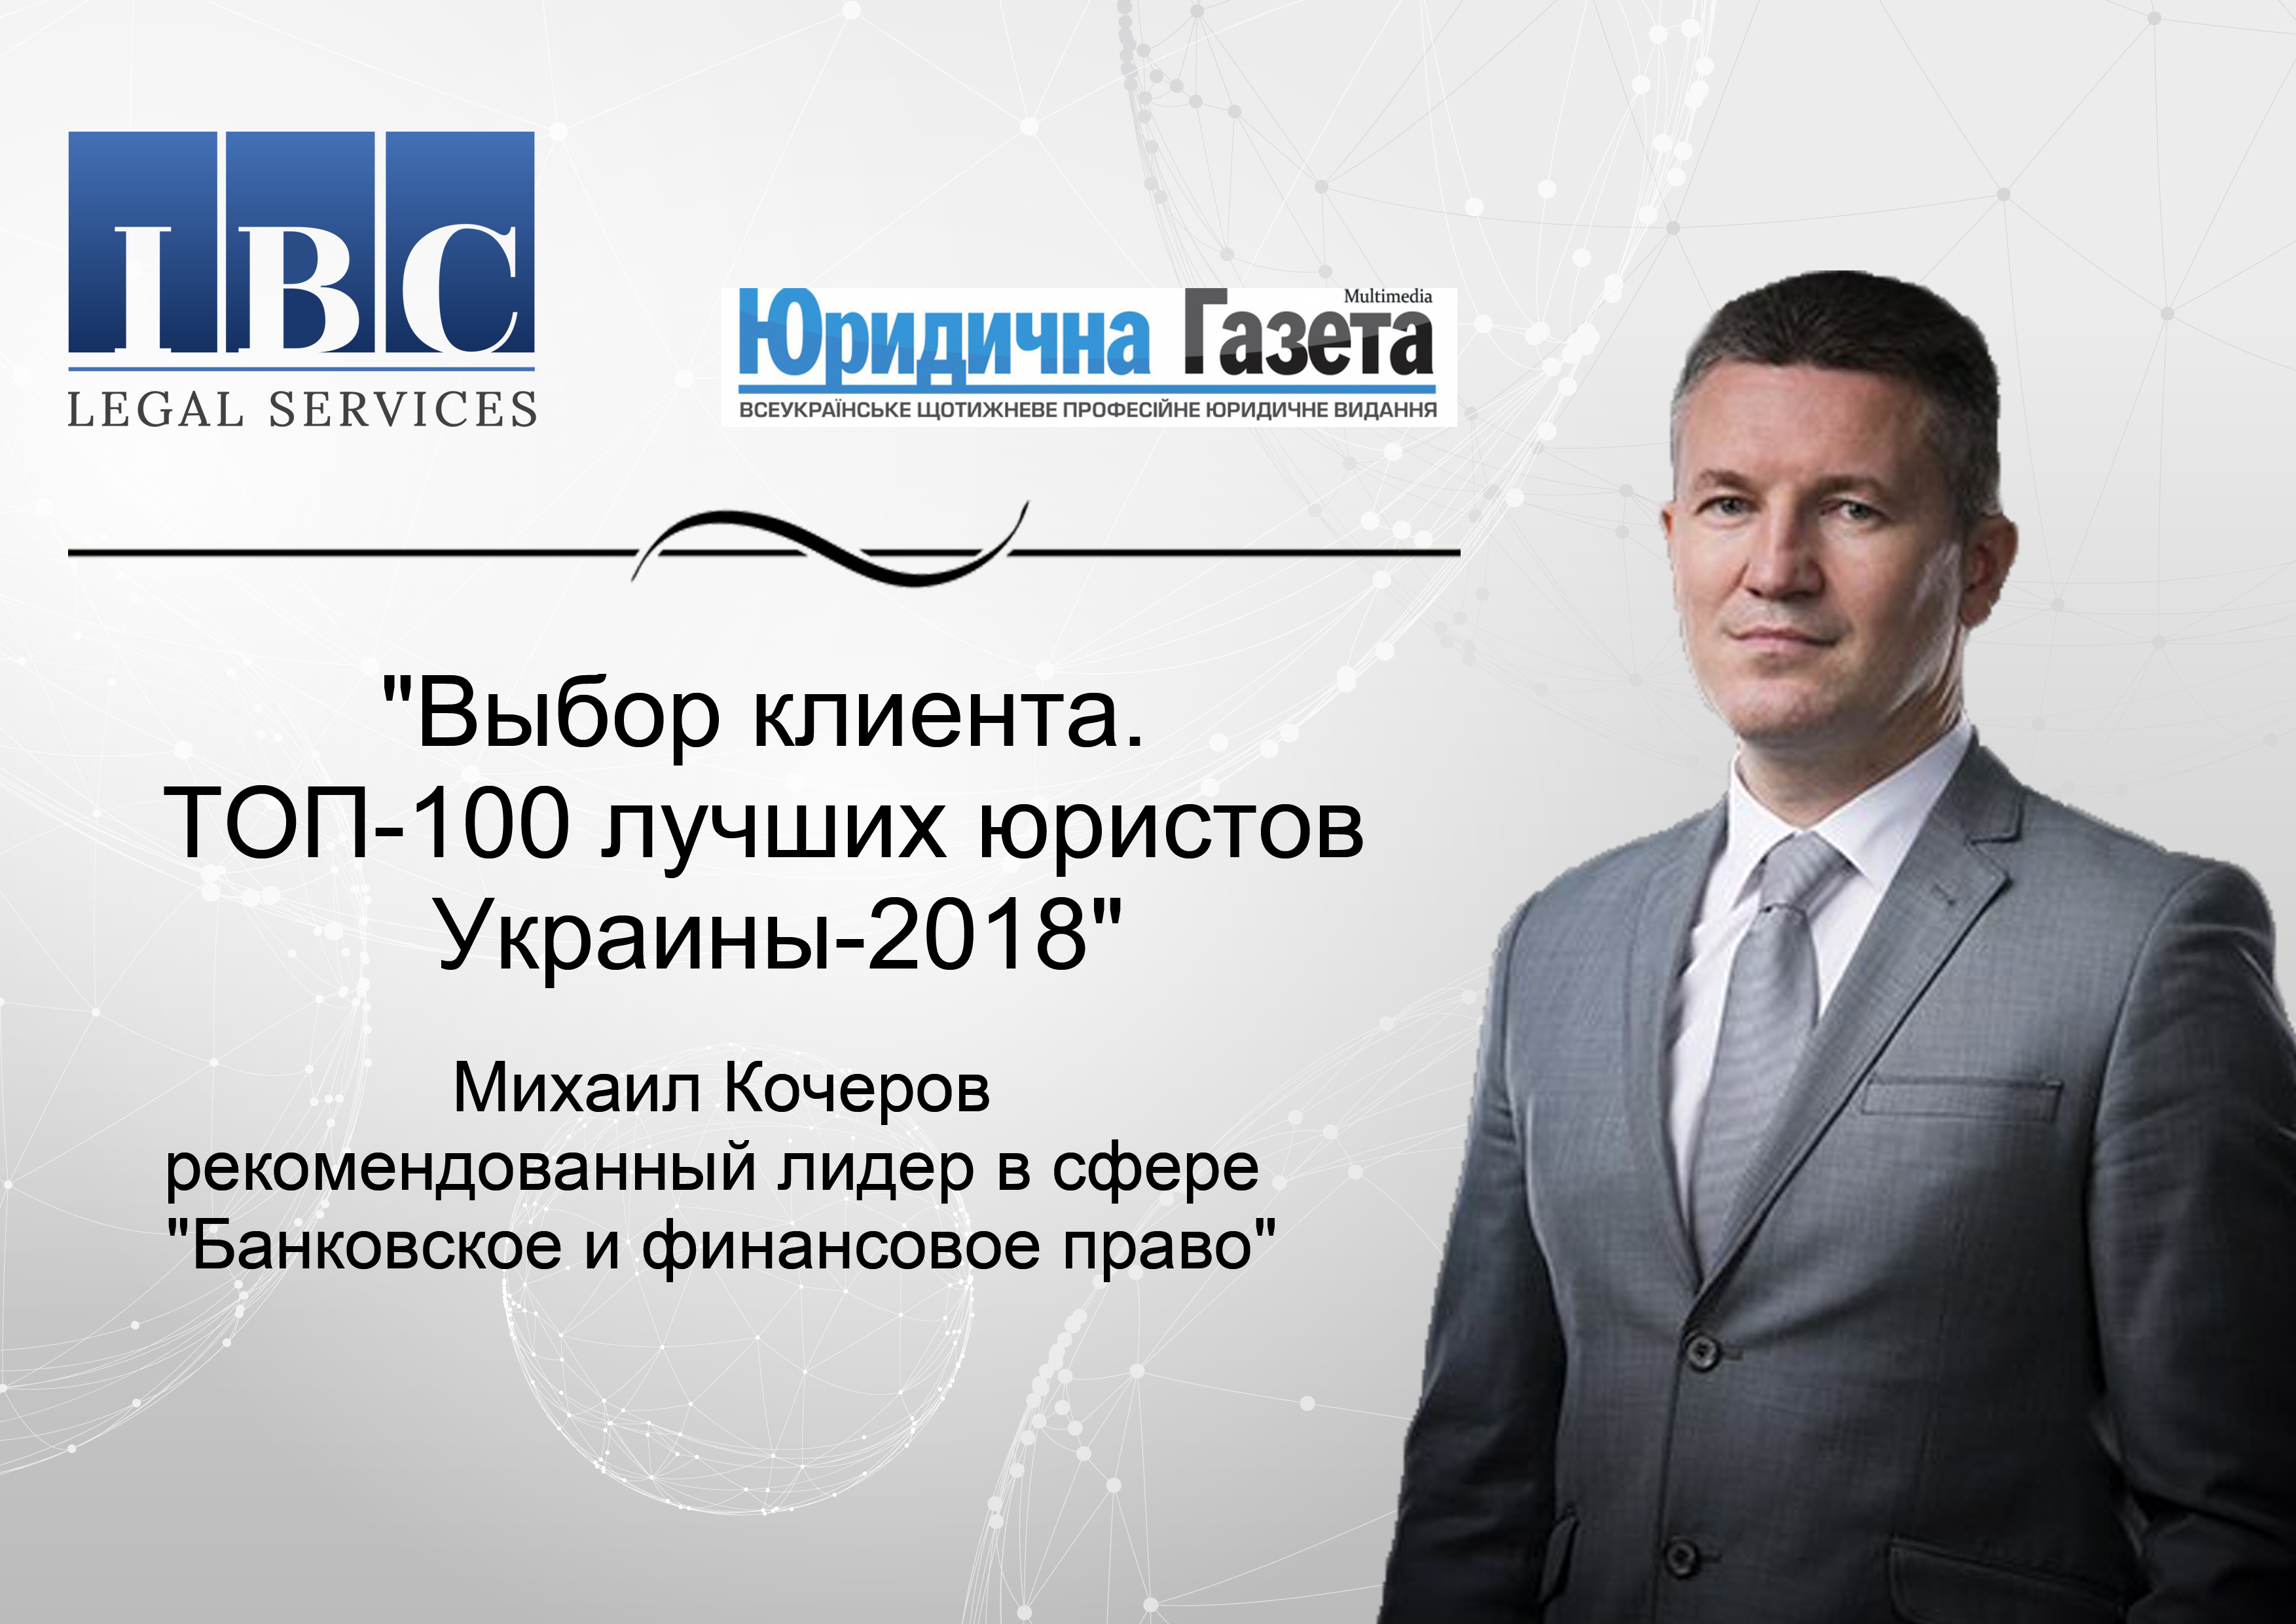 «Выбор клиента. ТОП 100 юристов Украины - 2018. Лидеры практик»